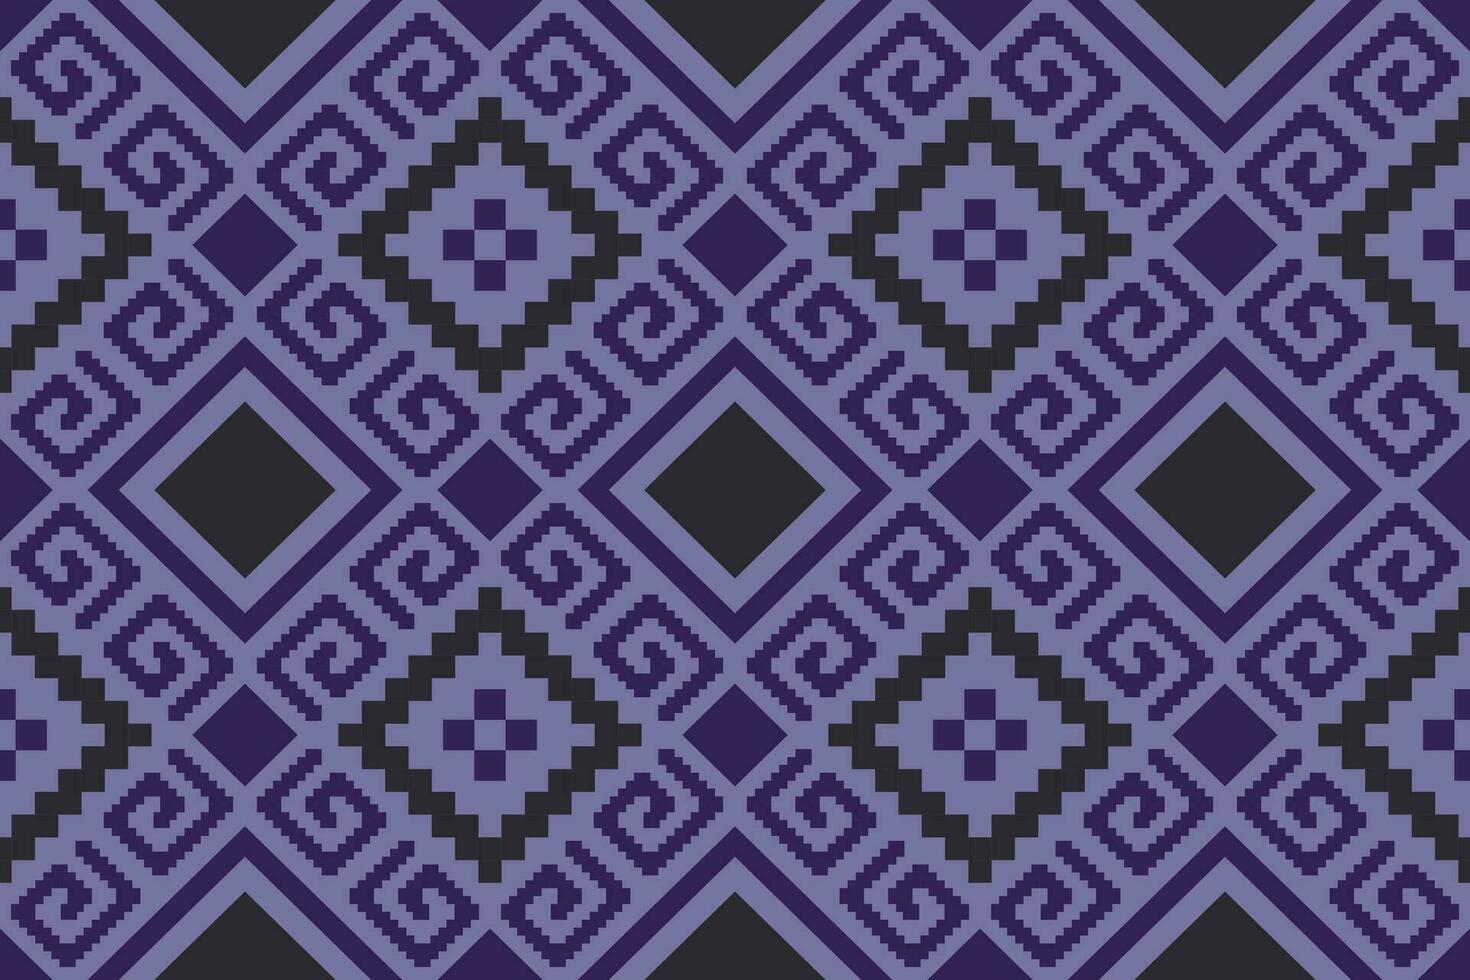 attraversare punto colorato geometrico tradizionale etnico modello ikat senza soluzione di continuità modello astratto design per tessuto Stampa stoffa vestito tappeto le tende e sarong azteco africano indiano indonesiano vettore